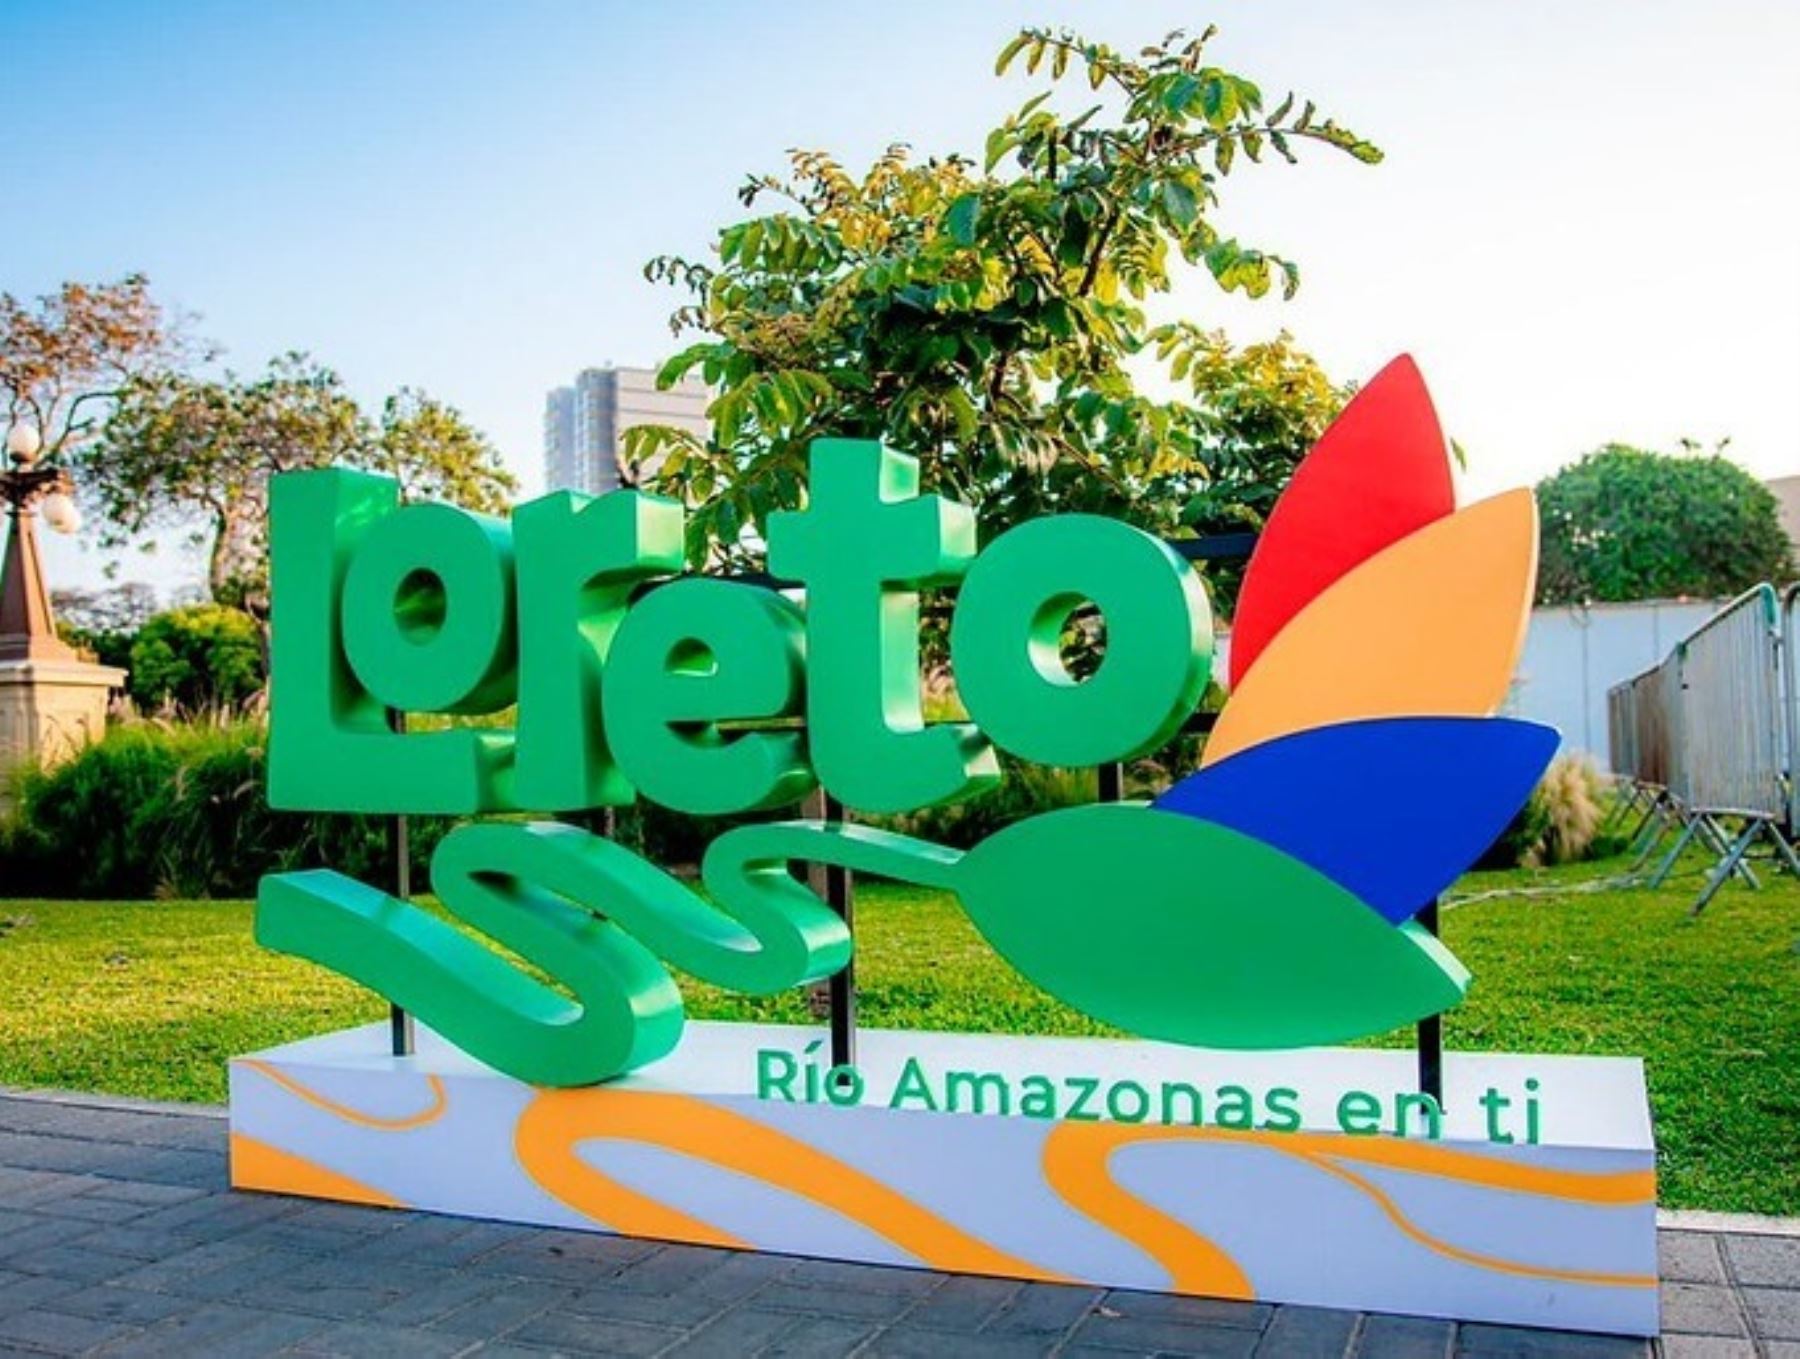 La marca "Loreto, río Amazonas en ti" se otorgará a los productos y servicios de la región Loreto que cumplan con los estándares de calidad, afirmó el Indecopi. Foto: ANDINA/difusión.